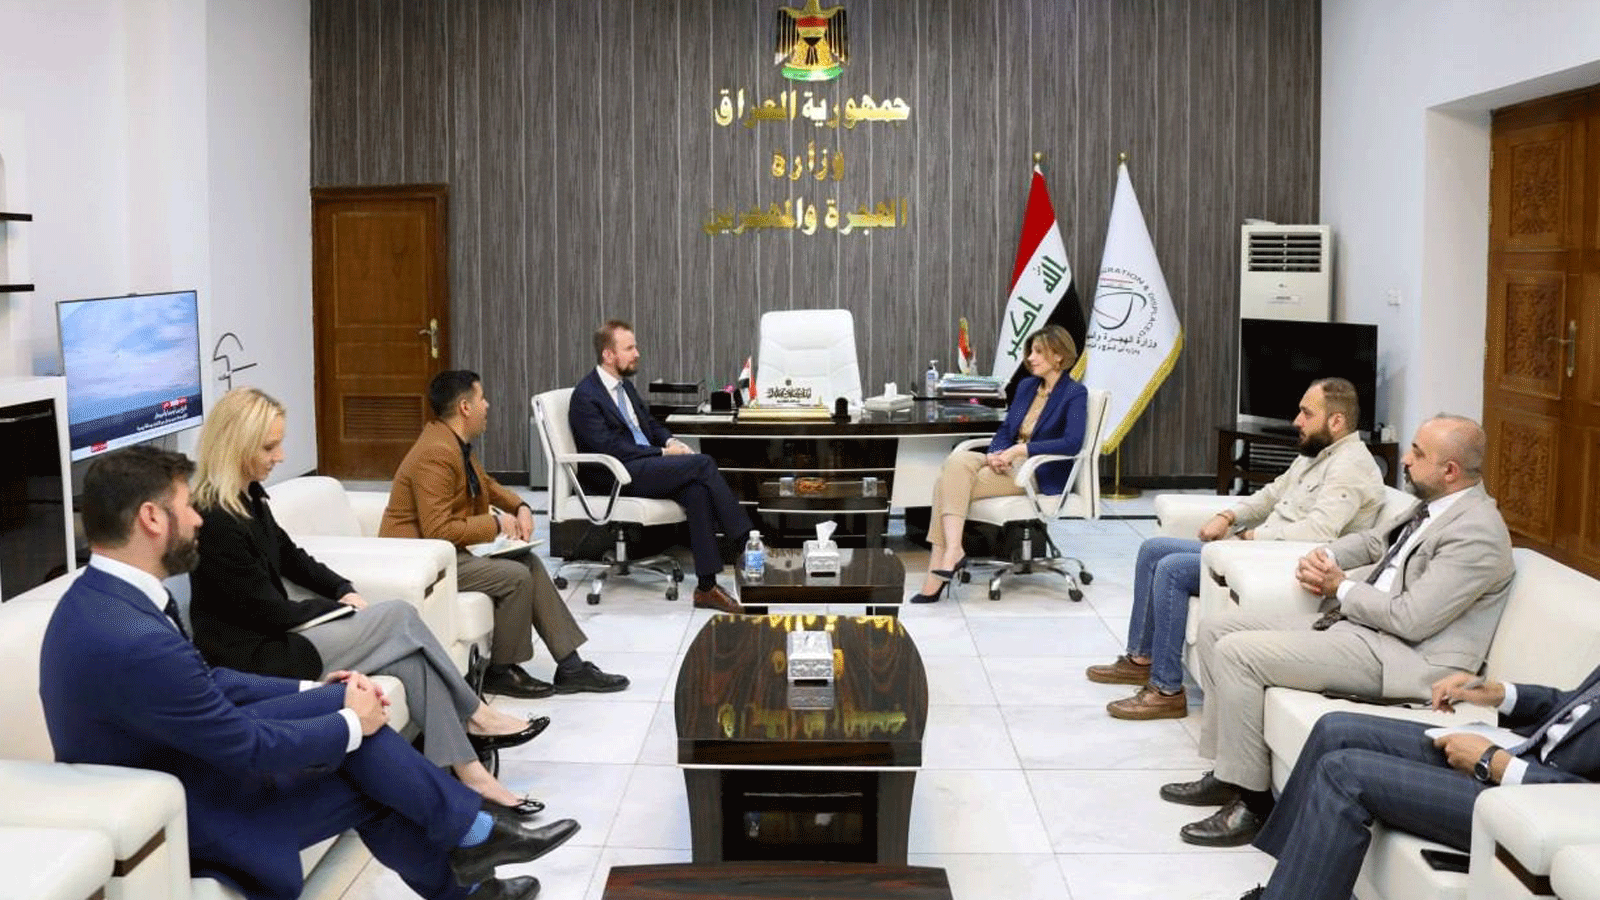 وزيرة الهجرة والمهجرين العراقية إيفان فائق جابرو اجتمعت الاربعاء 16 تشرين الثاني/ نوفمبر 2021 مع سفير الاتحاد الأوروبي في العراق فيلا فاريولا